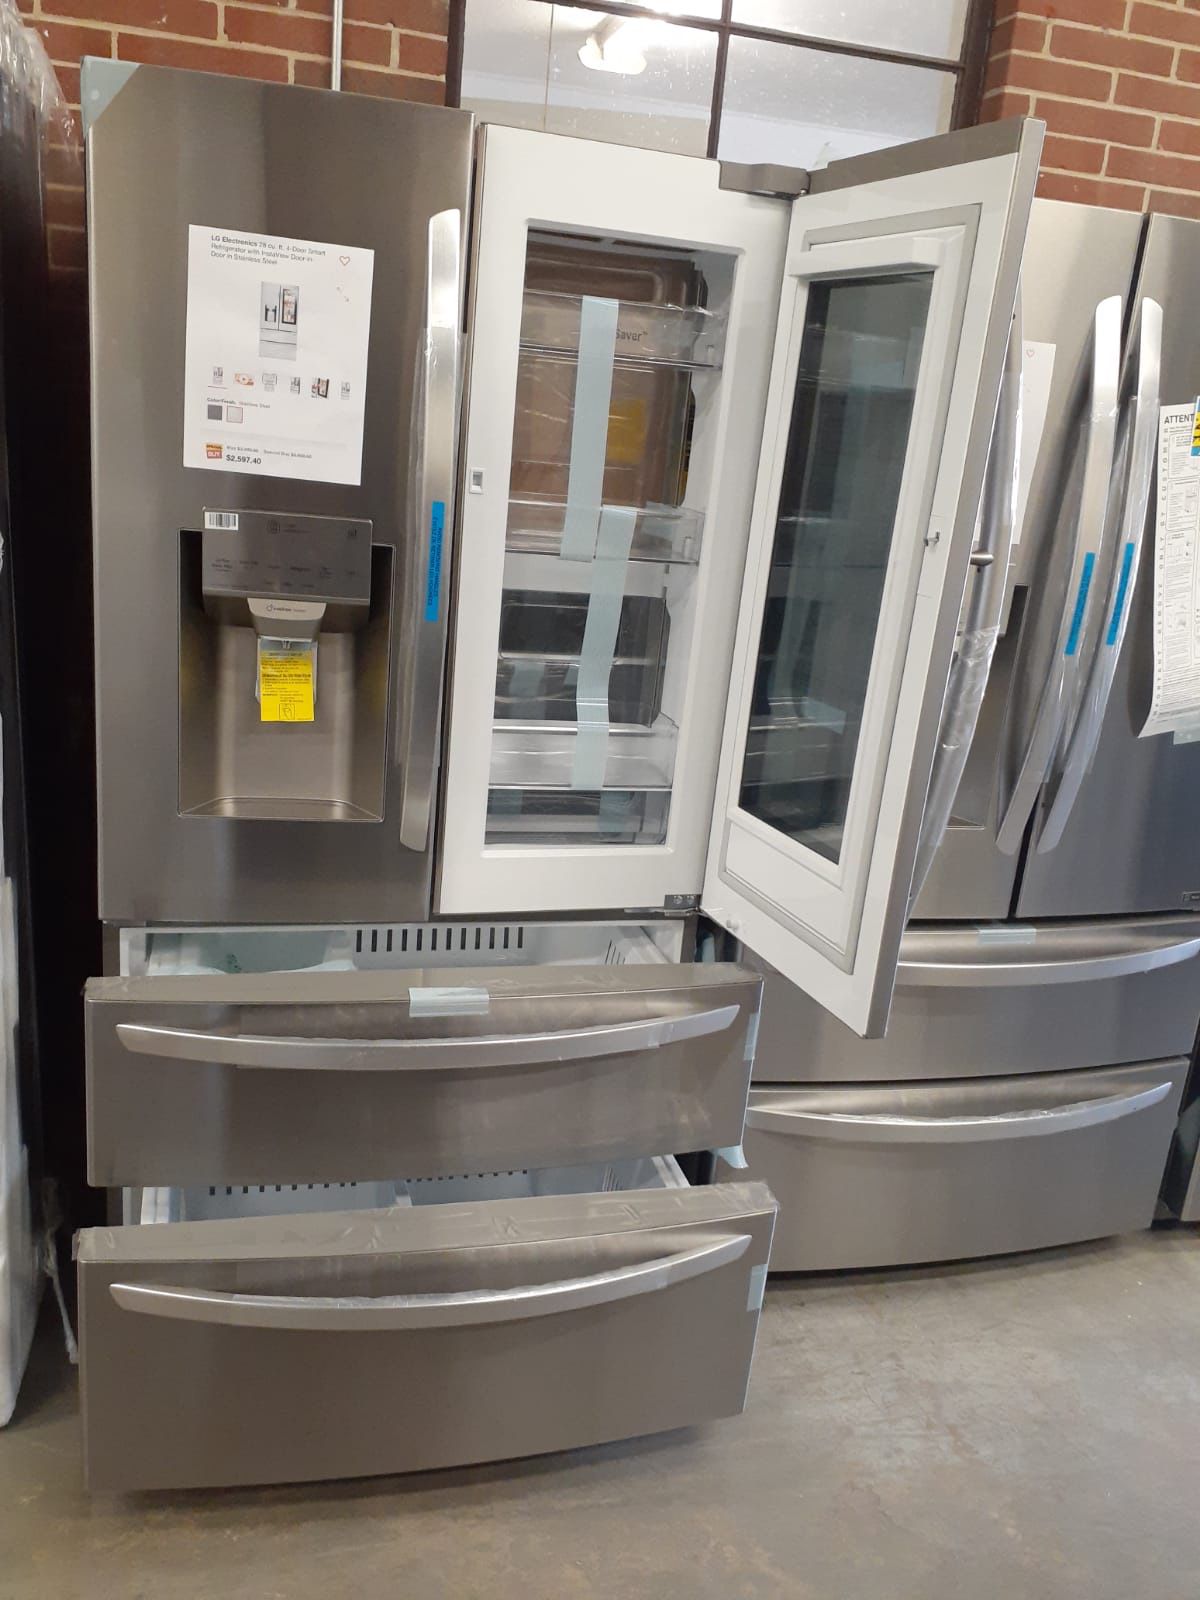 Brand new LG 4-doors refrigerator with instaview door in door and 2 freezer drawers